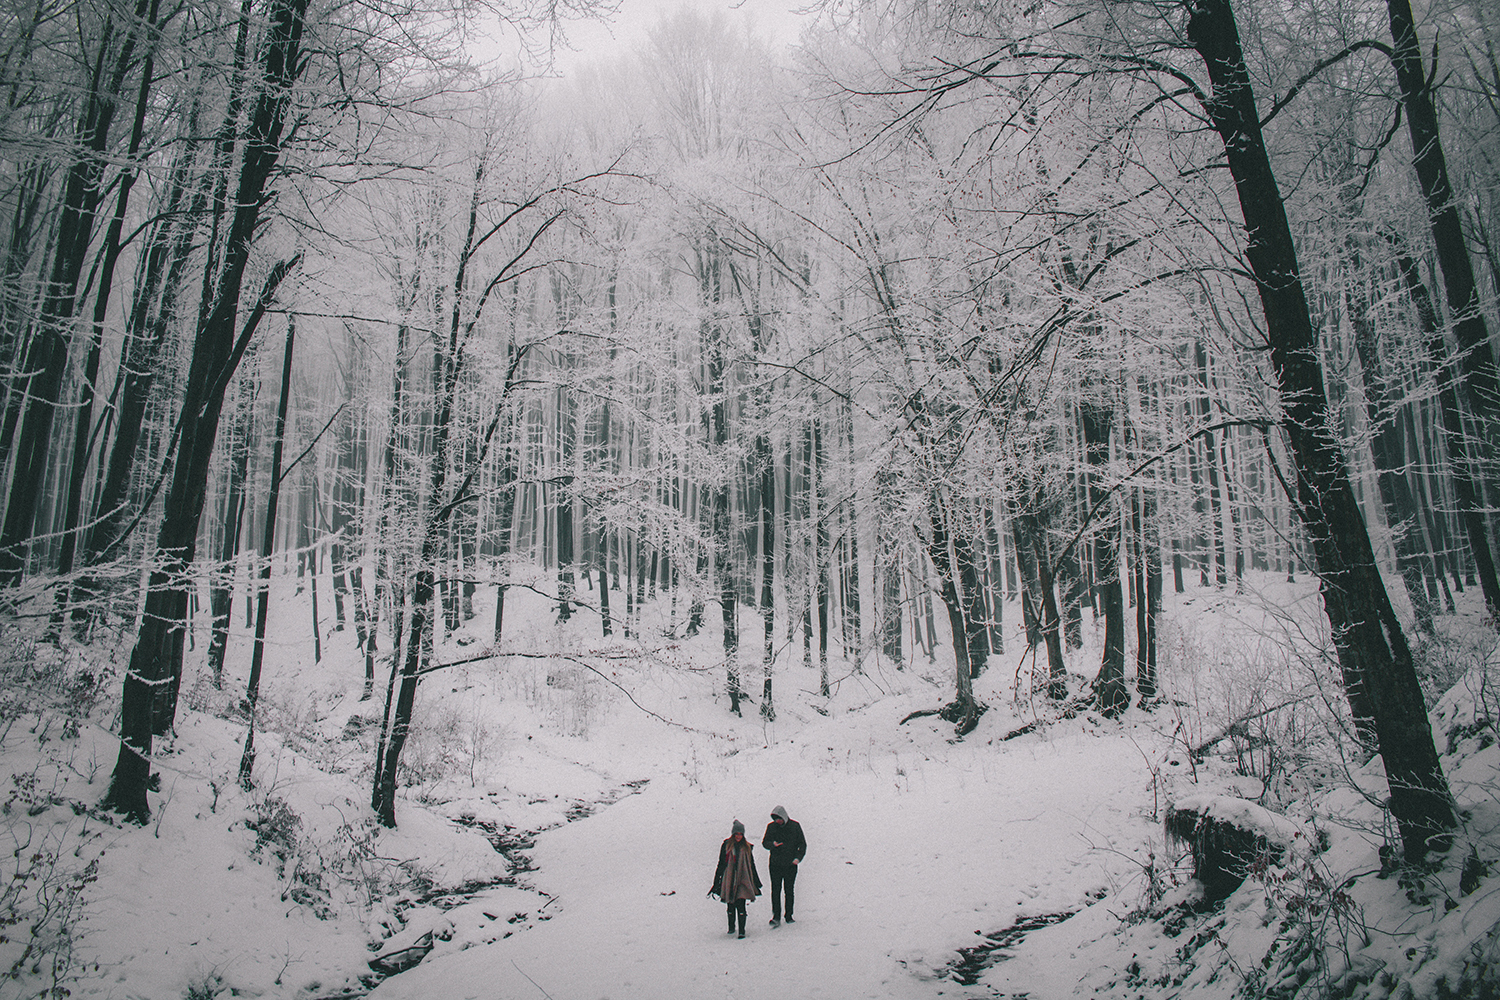 Poiana Brasov Hike - couple hiking in Poiana Brasov in the winter